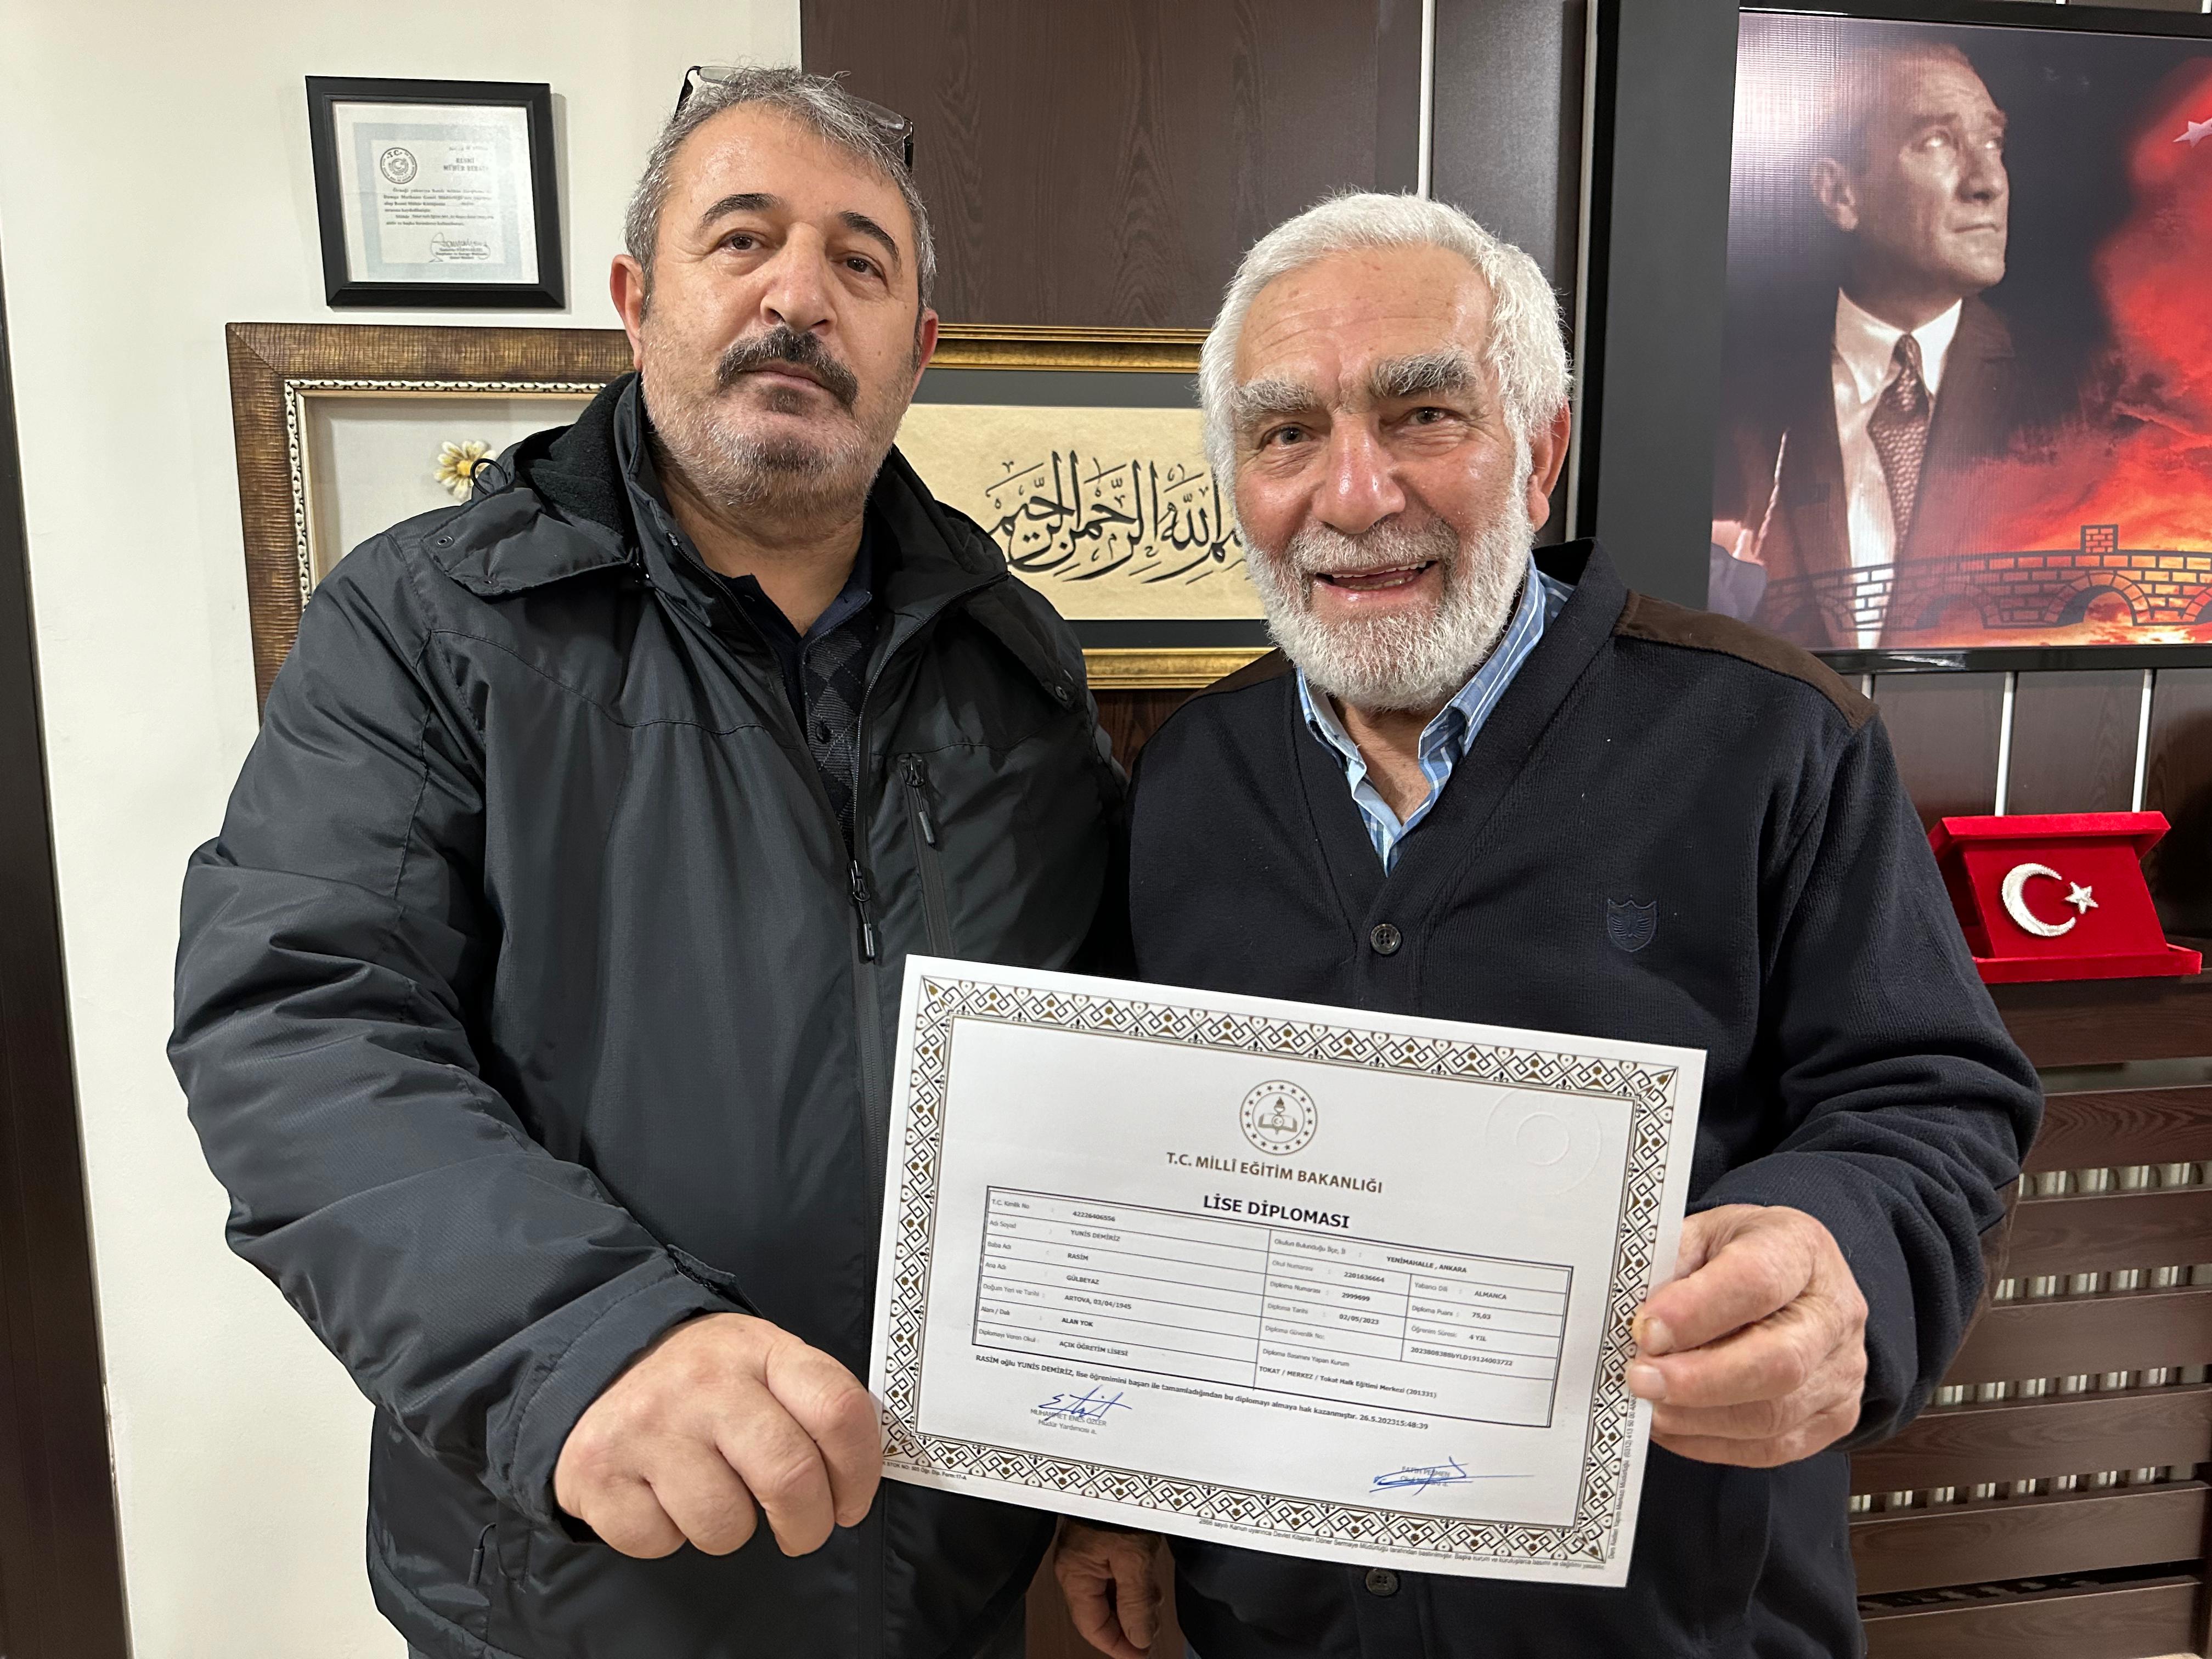 Tokat’ta 78 yaşında liseyi bitiren Yunis Demiriz, diplomasını ailesiyle birlikte aldı